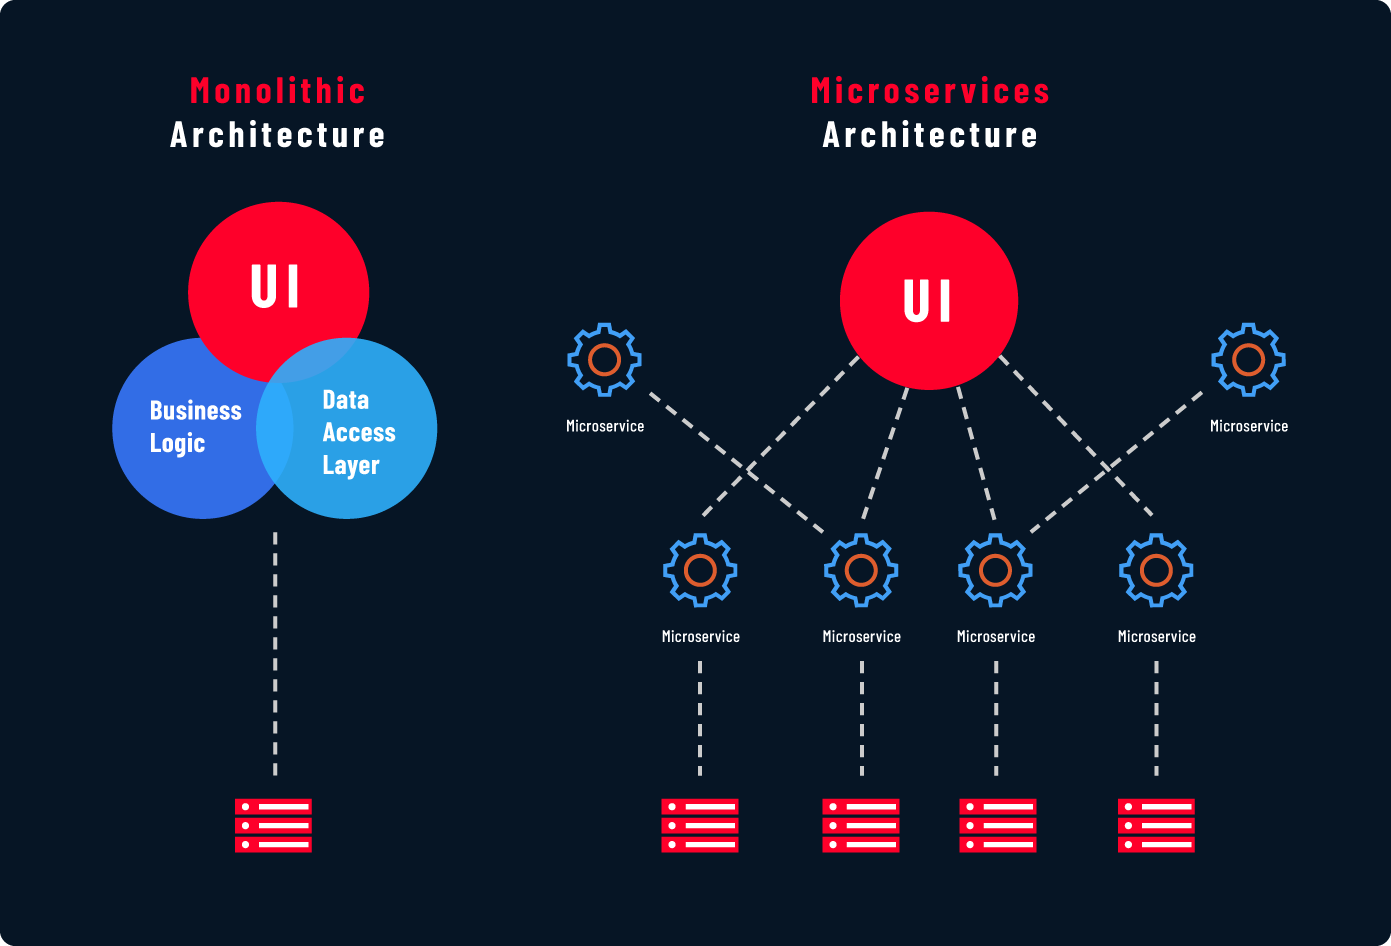 Monolithic architecture vs Microservices architecture